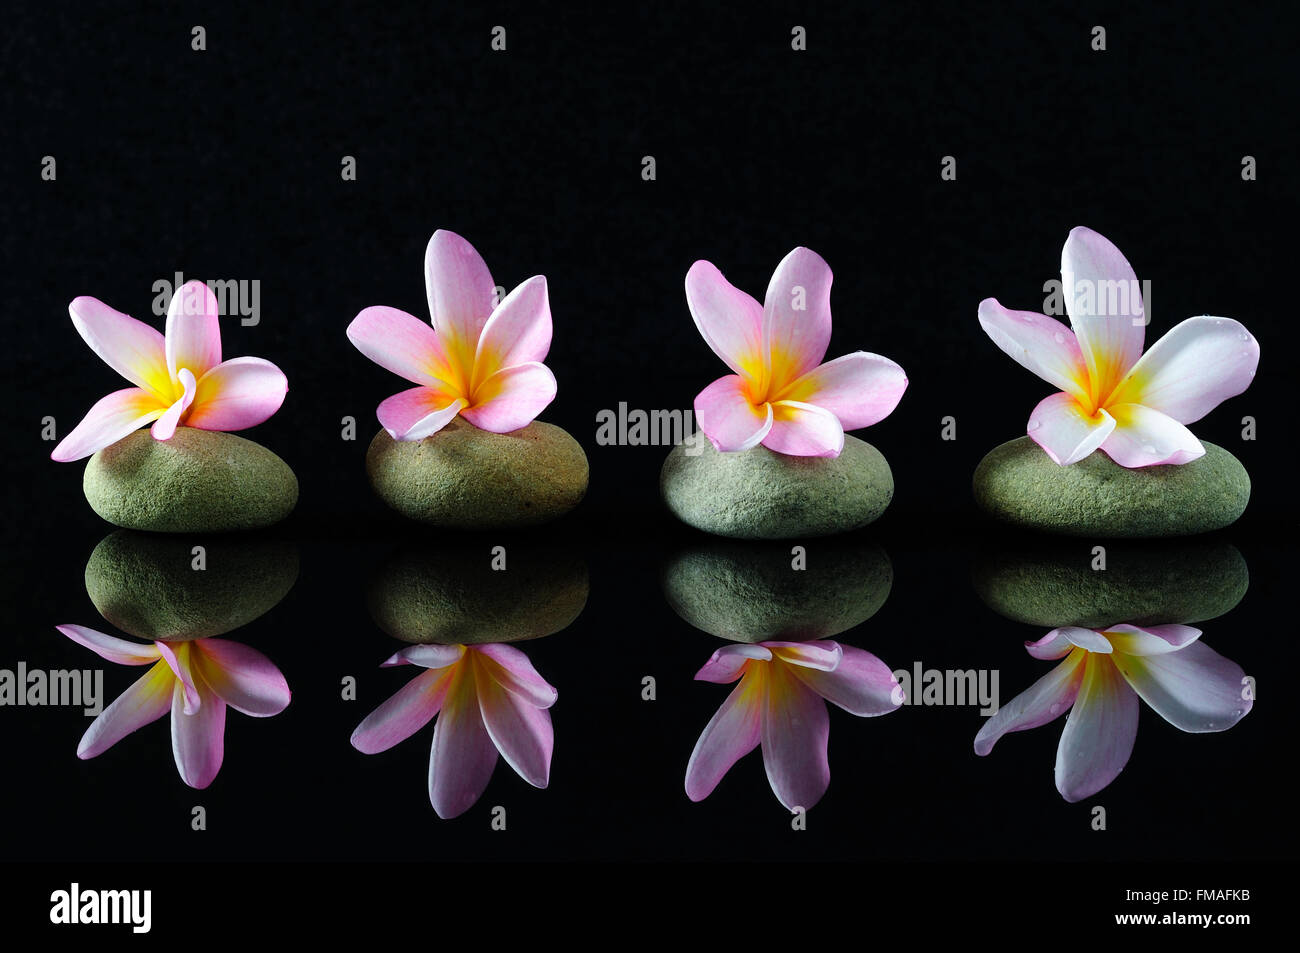 Spa, belleza y bienestar concepto - Frangipani flores en piedras zen con la reflexión, el fondo oscuro. Foto de stock